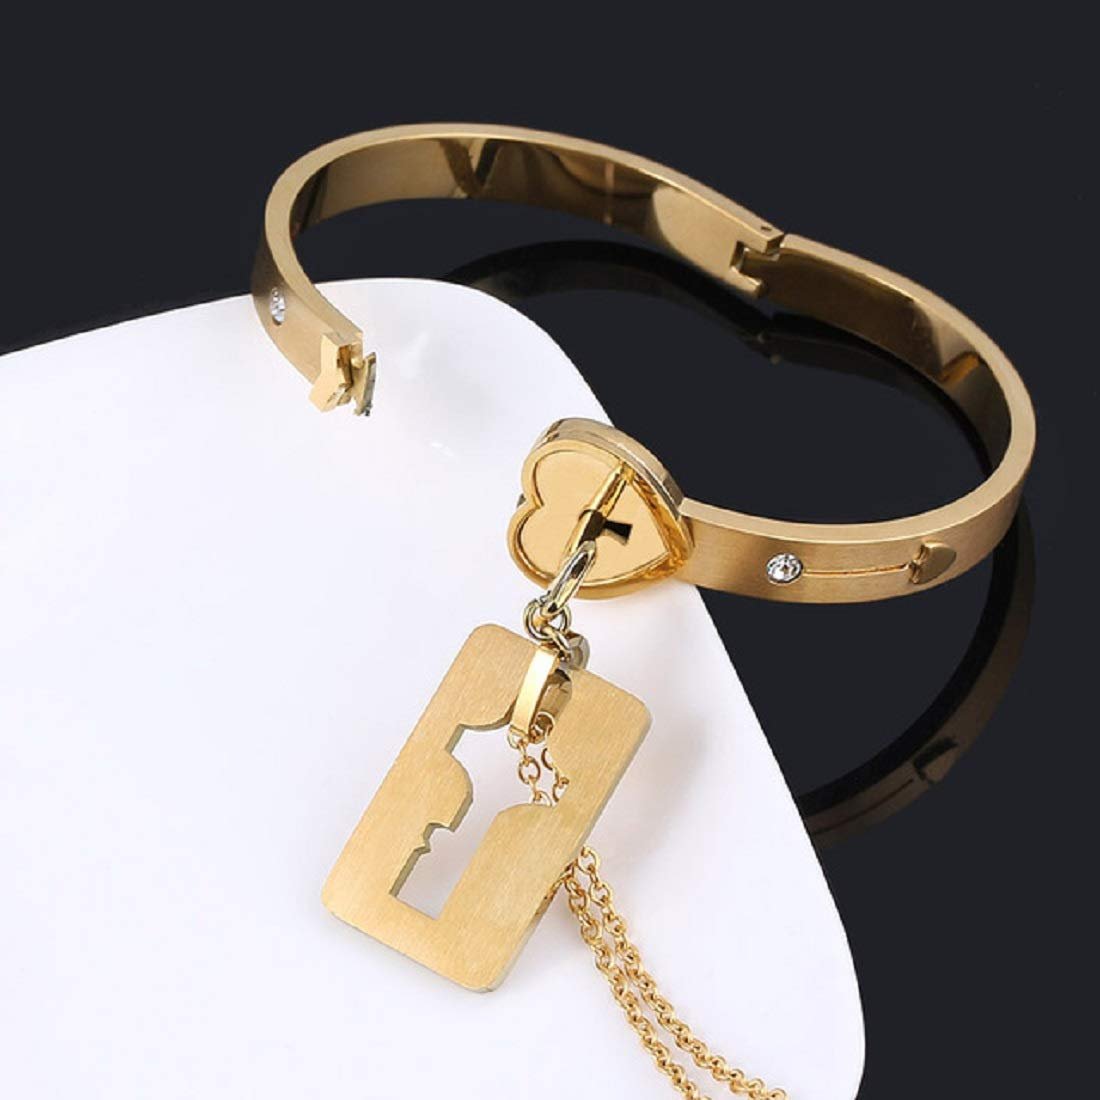 ❤️LoveLock™ Bracelet + Necklace Key Set❤️